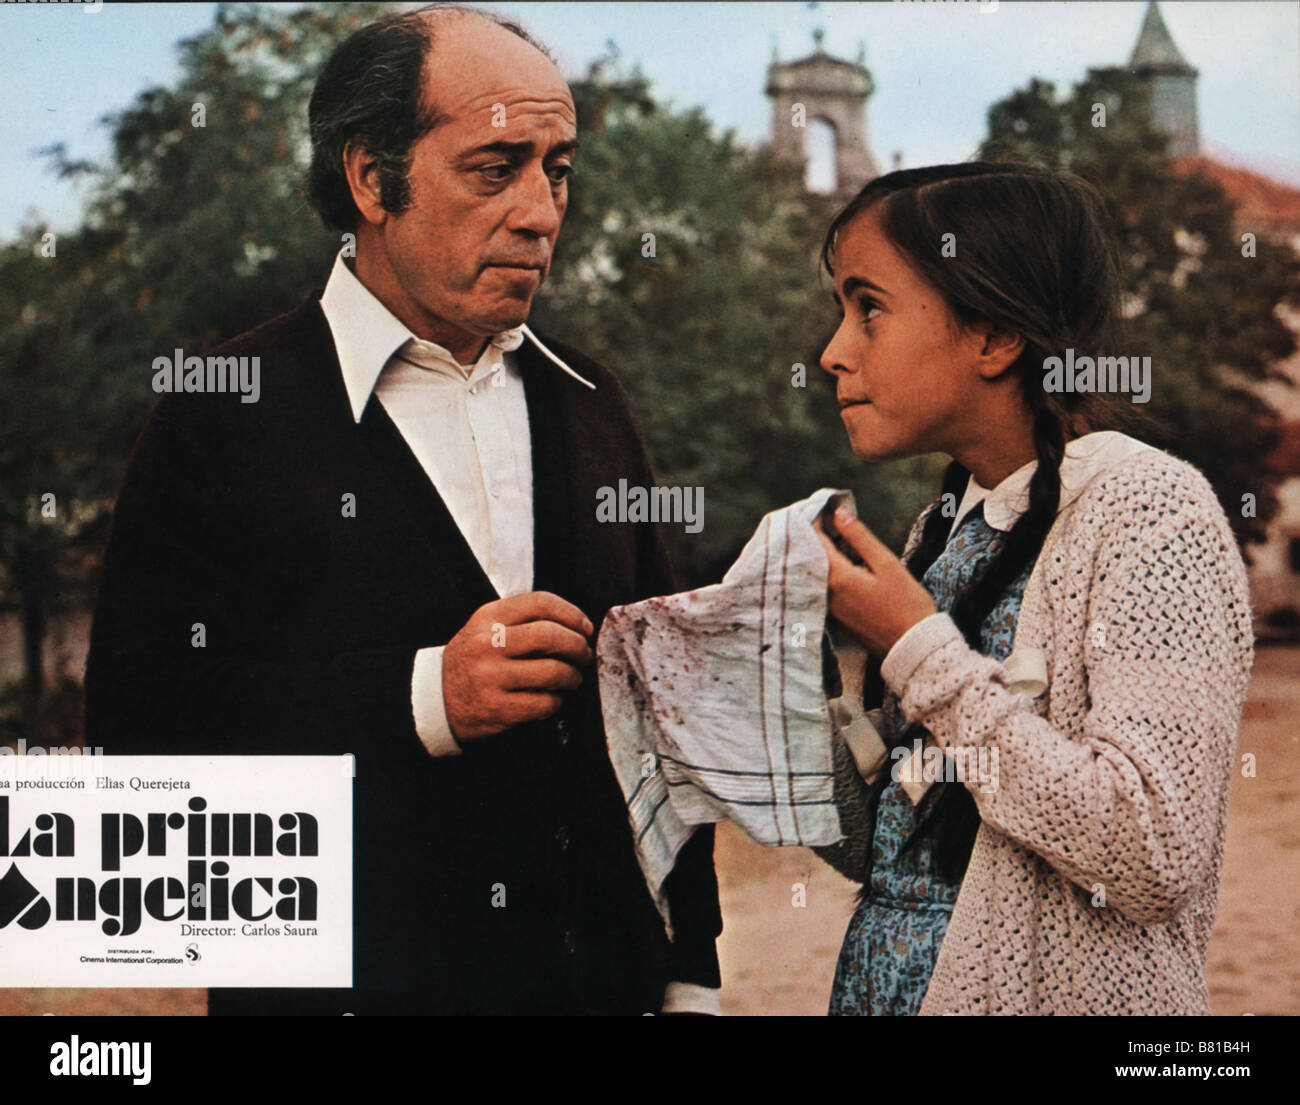 La Prima Angélica Year: 1974 - Spain José Luis López Vázquez, María Clara Fernández de Loaysa  Director: Carlos Saura Stock Photo